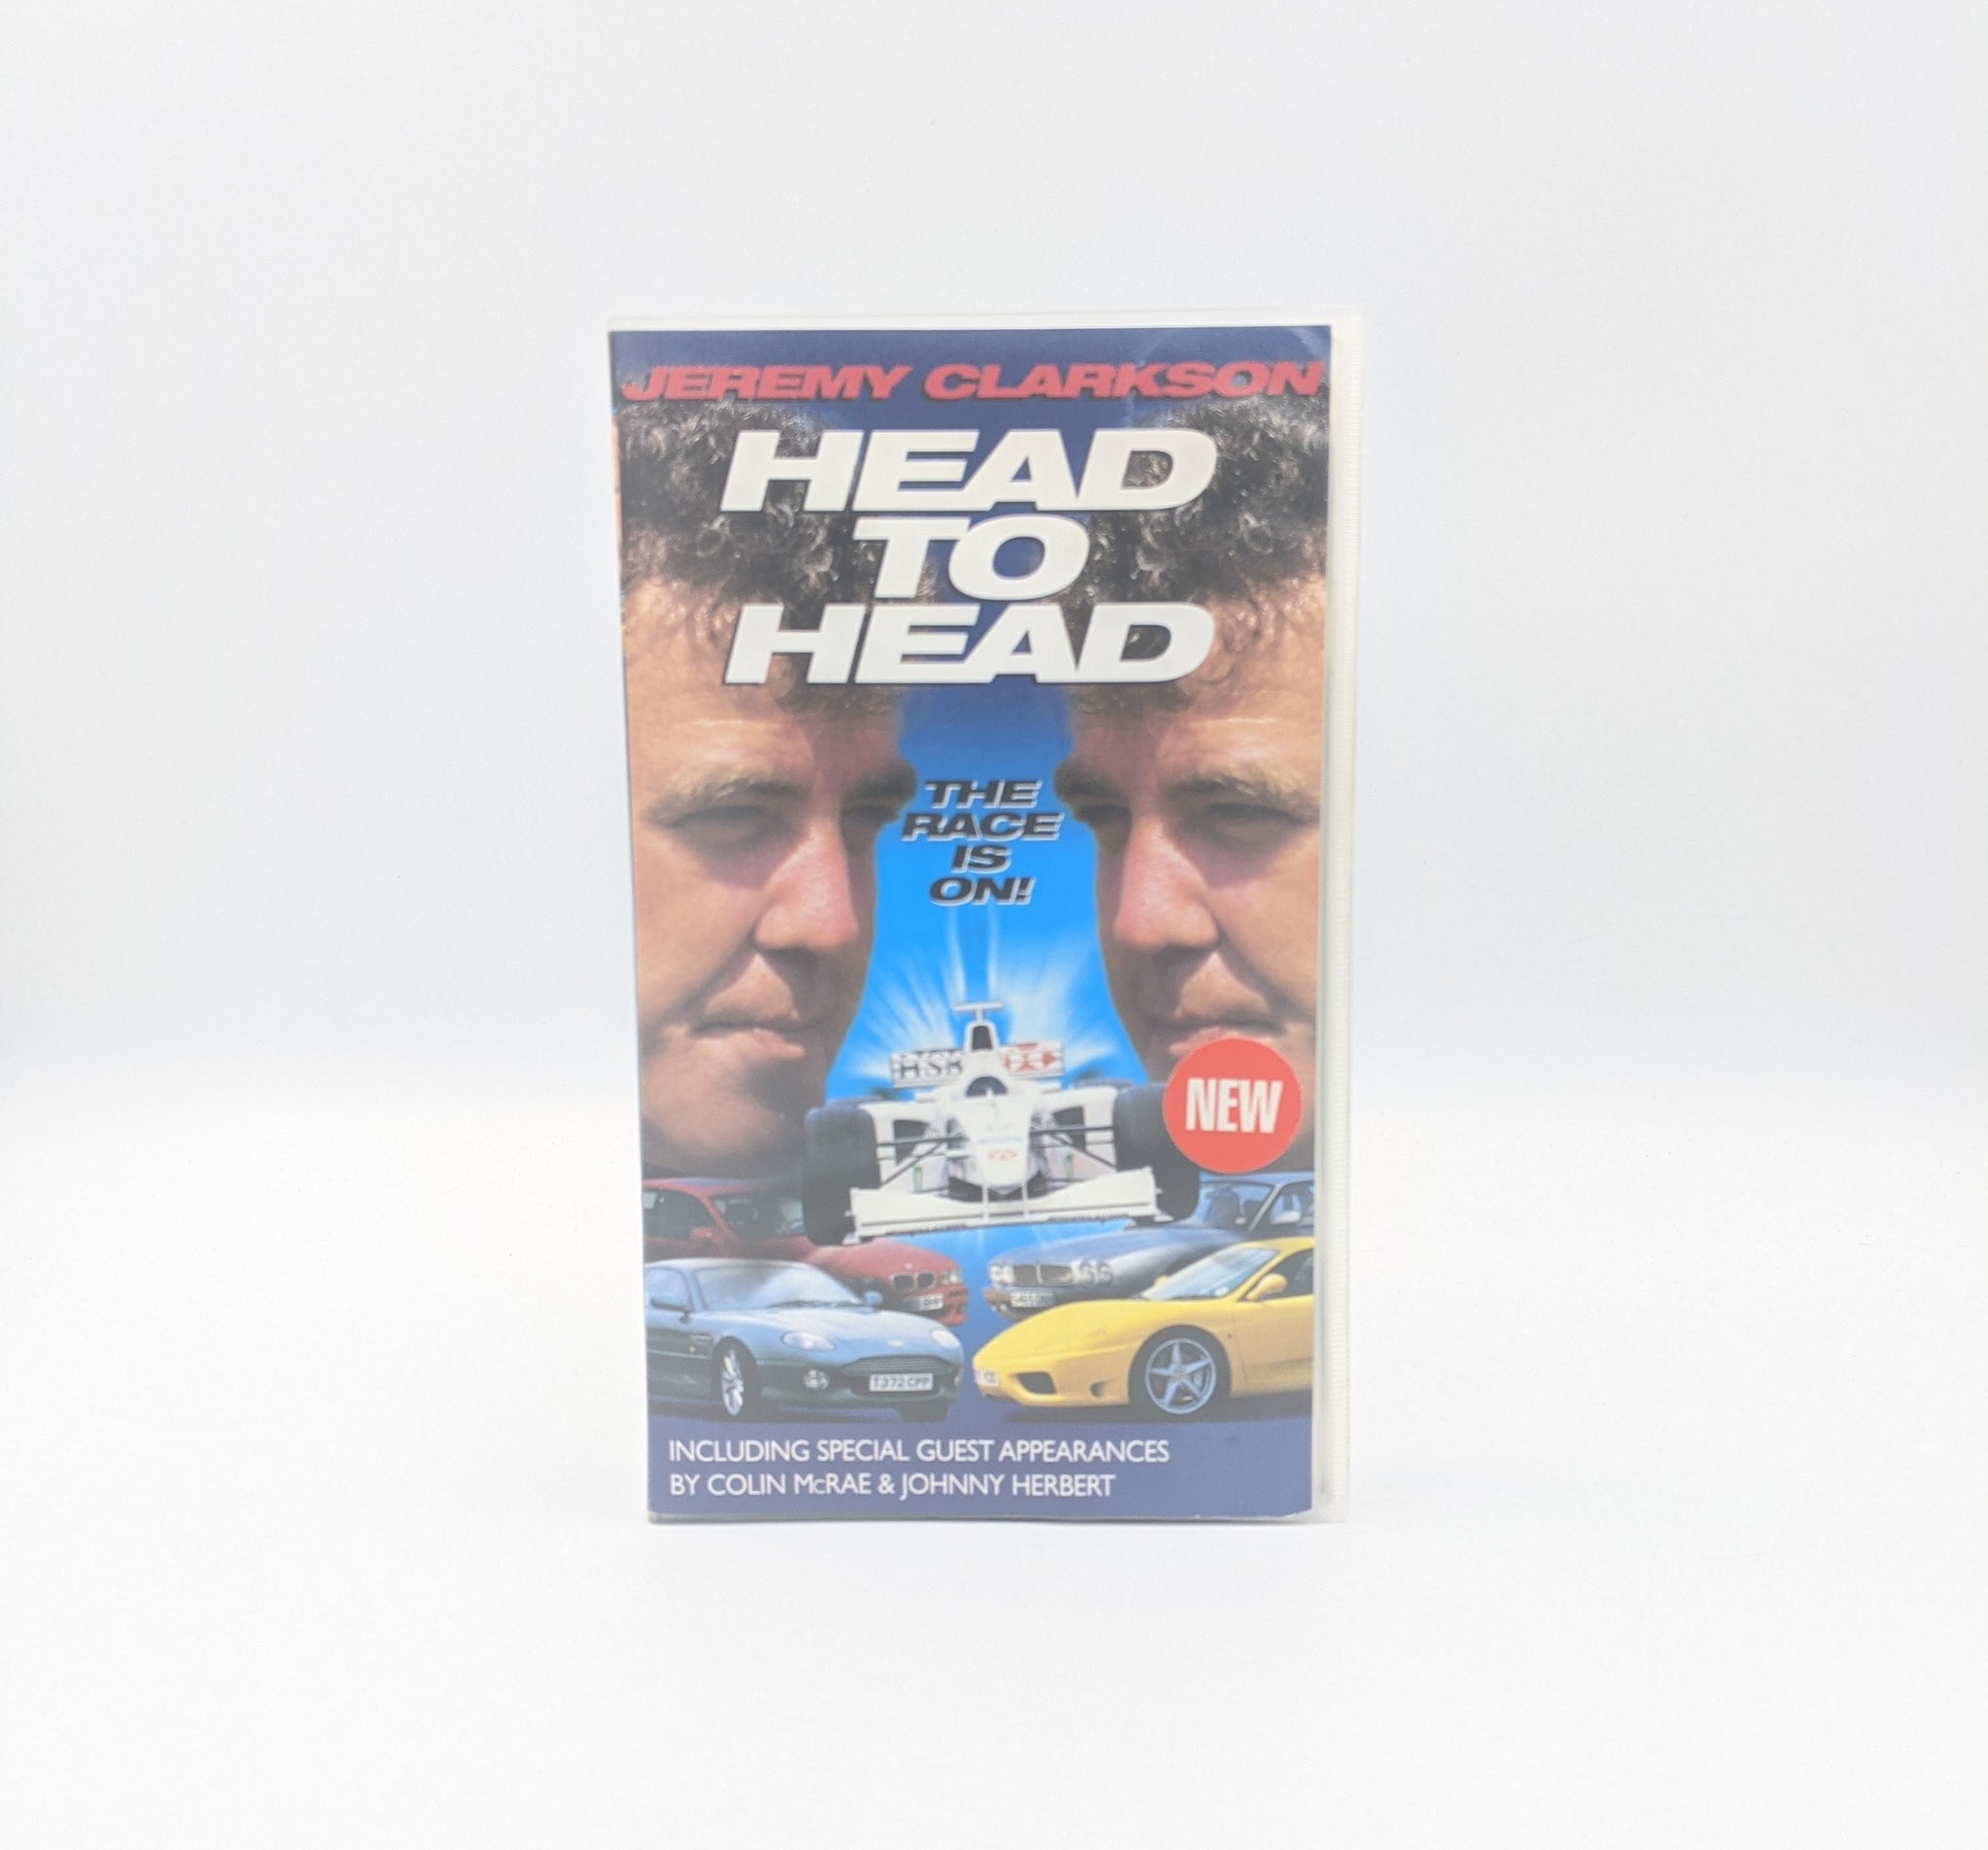 HEAD TO HEAD VHS